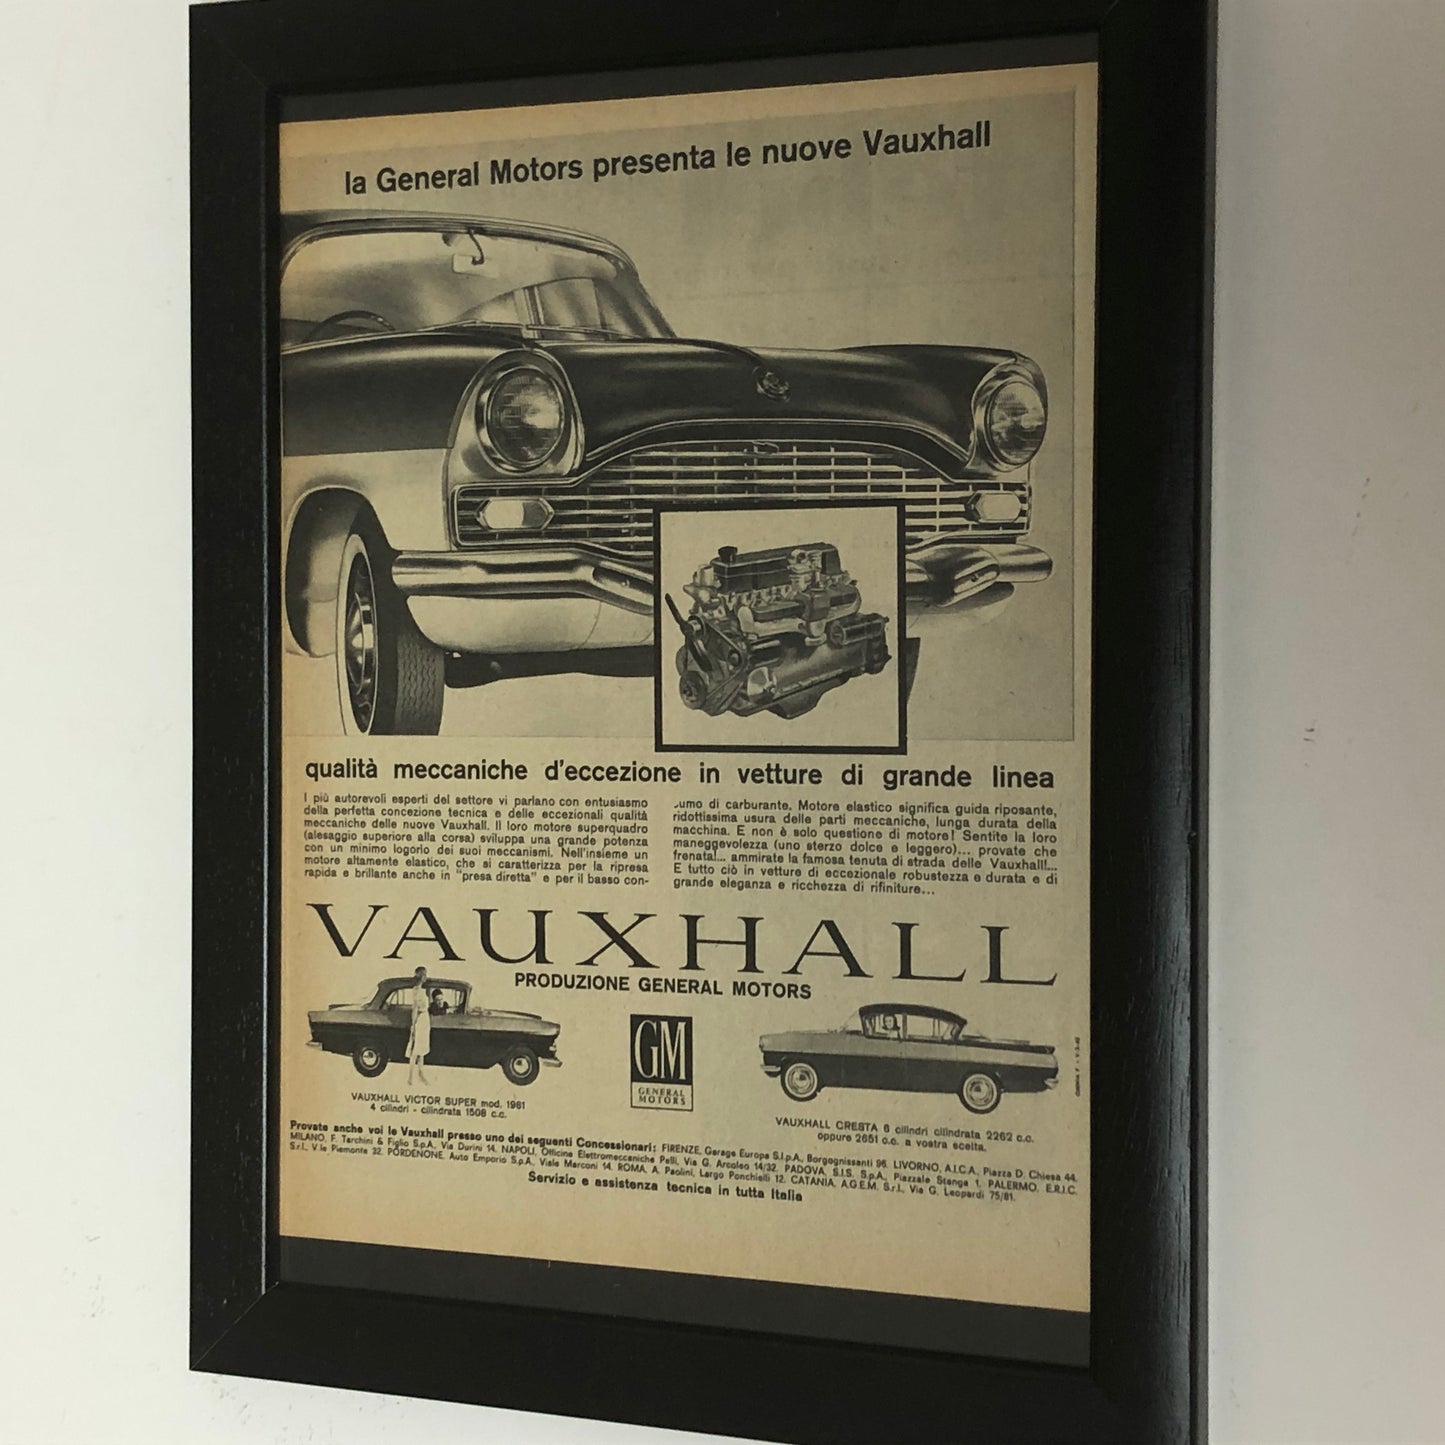 GM Vauxhall Pubblicità Anno 1960 GM Vauxhall Victor Super e Cresta